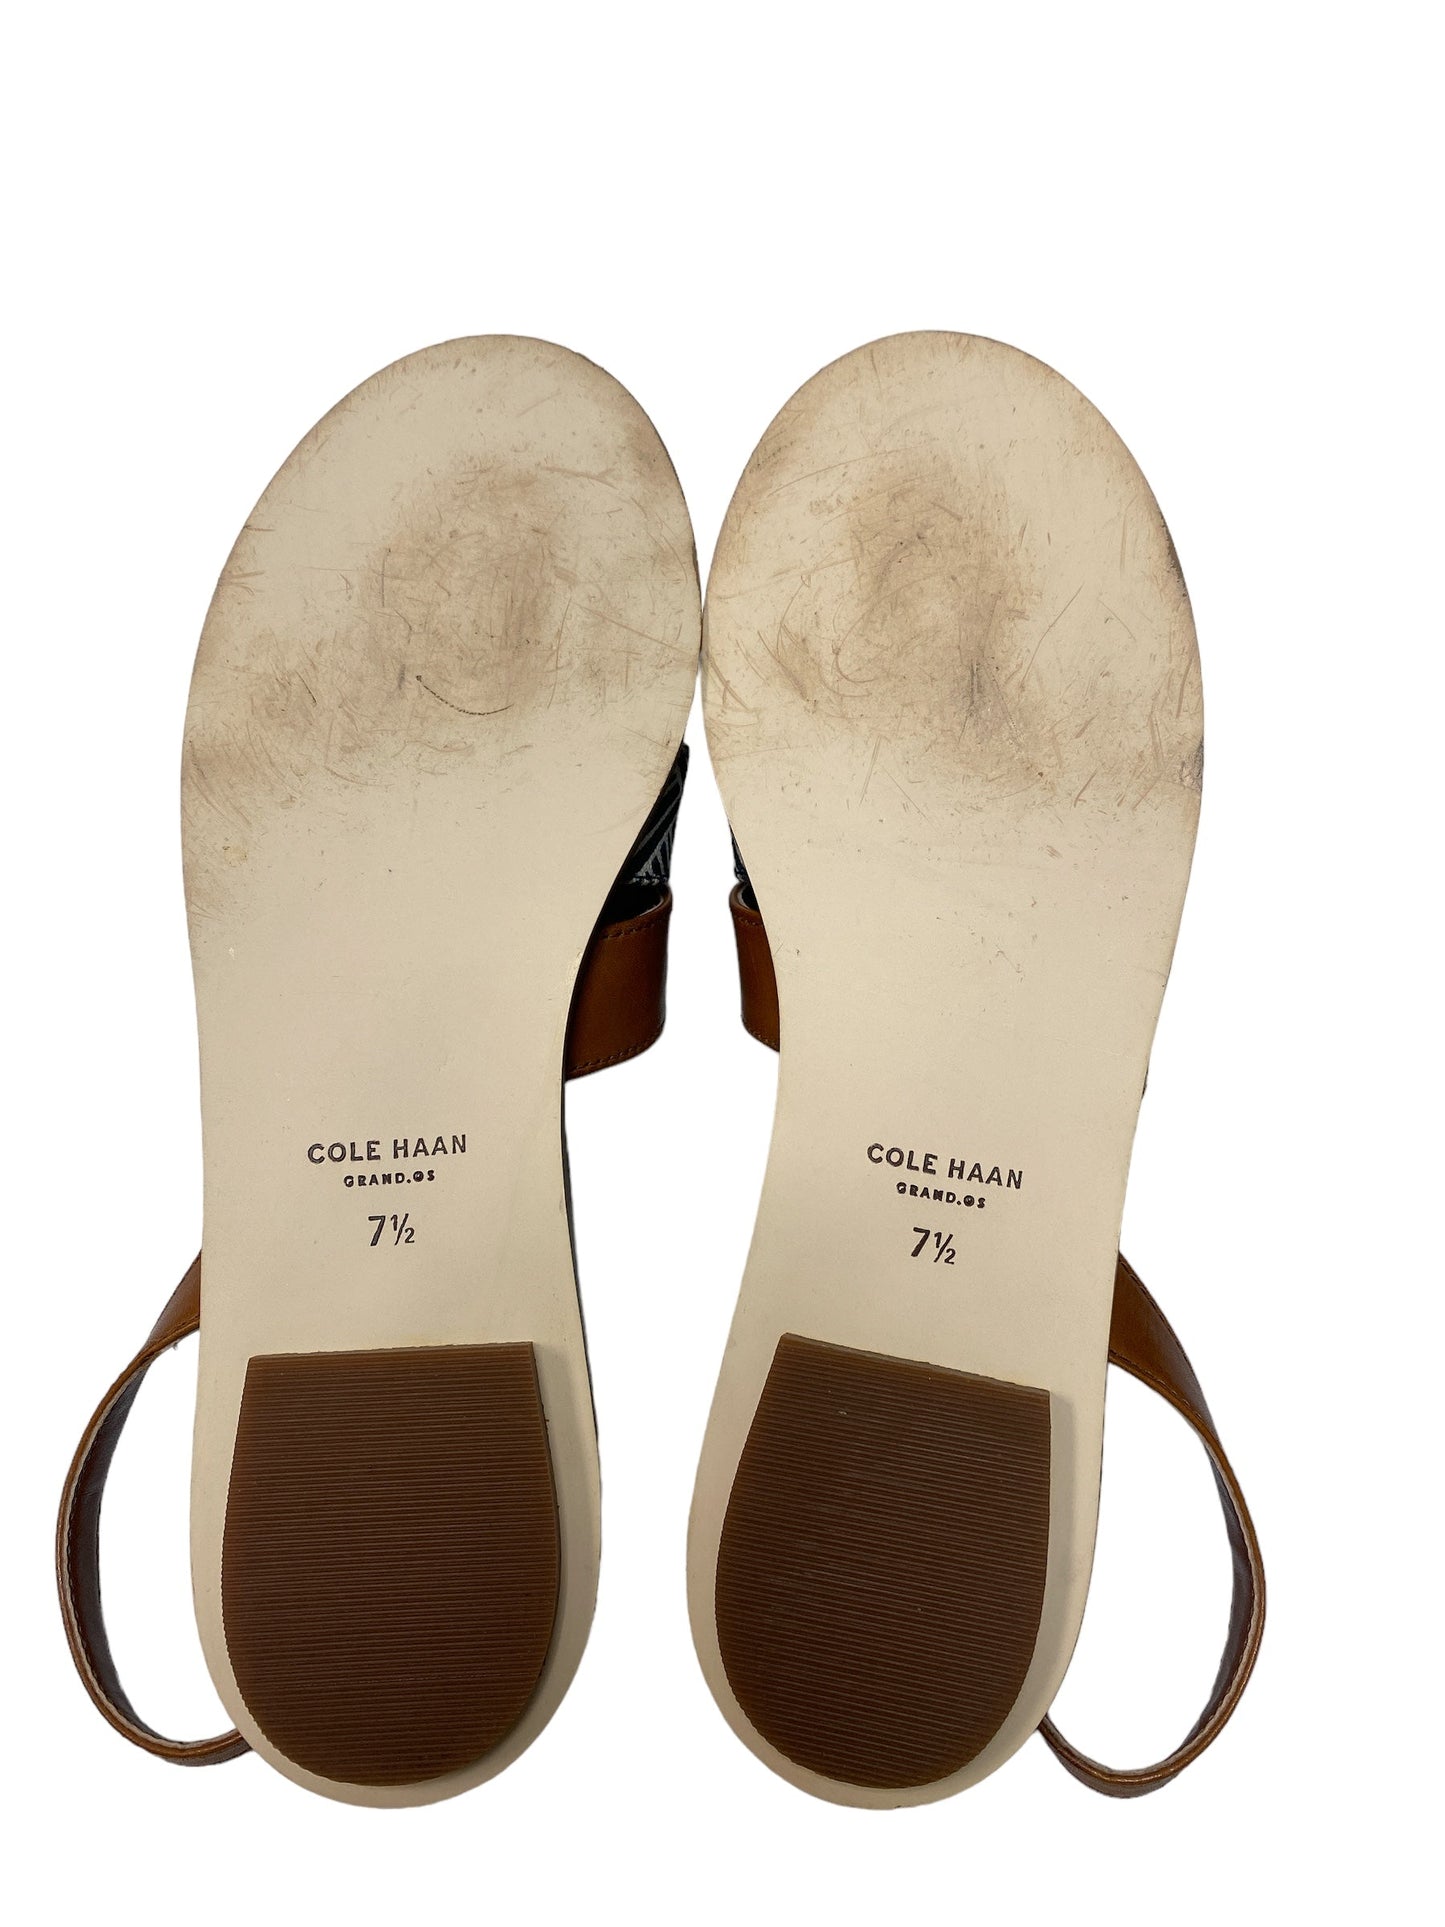 Brown & Orange Sandals Designer Cole-haan, Size 7.5